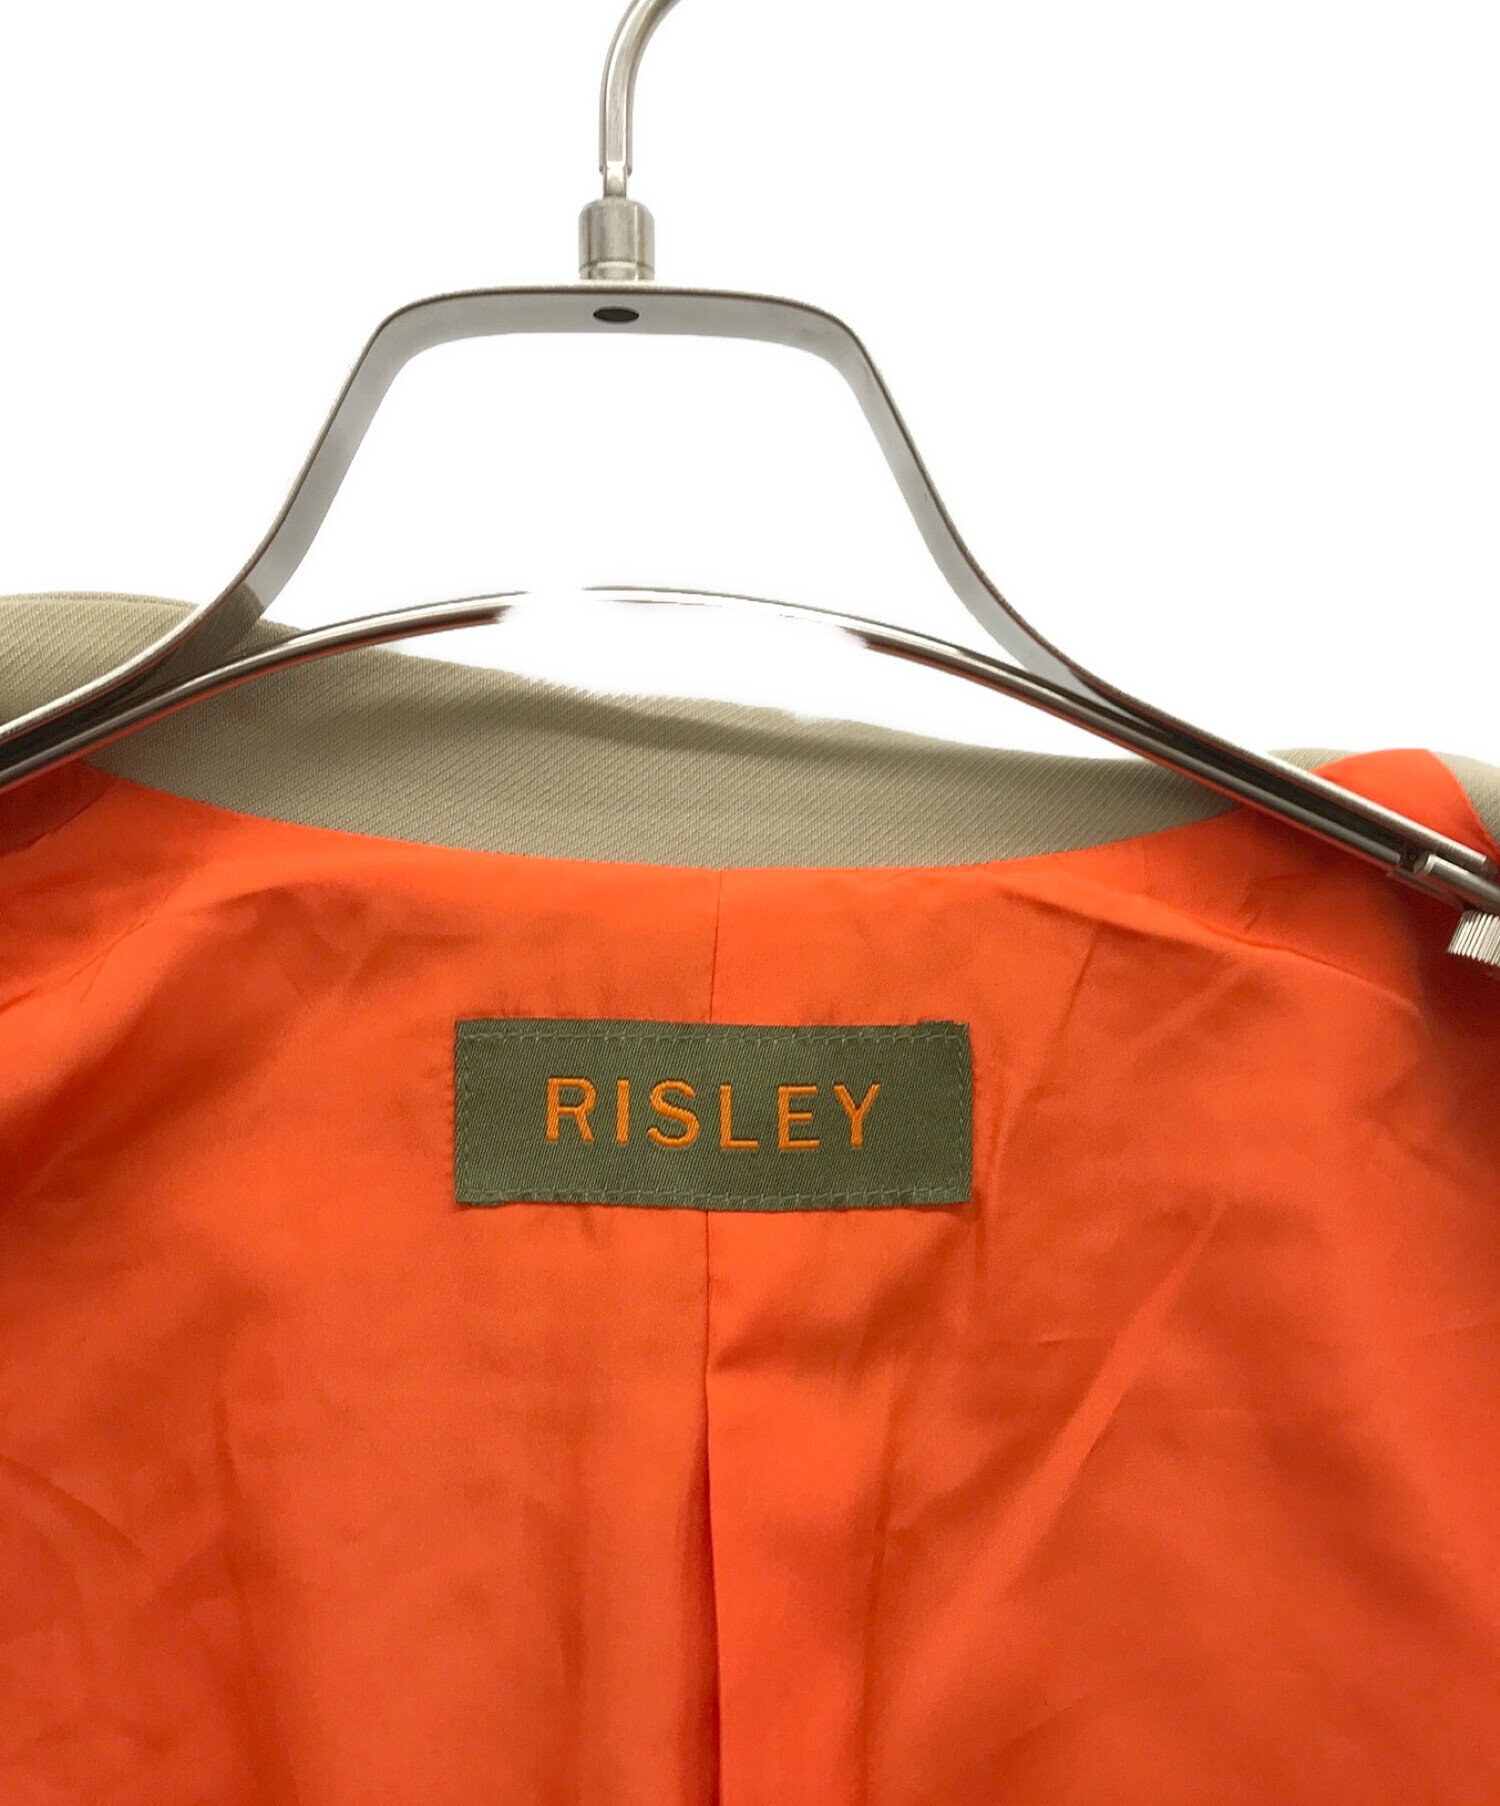 risley (リズレー) ダブルジャケット ベージュ サイズ:38